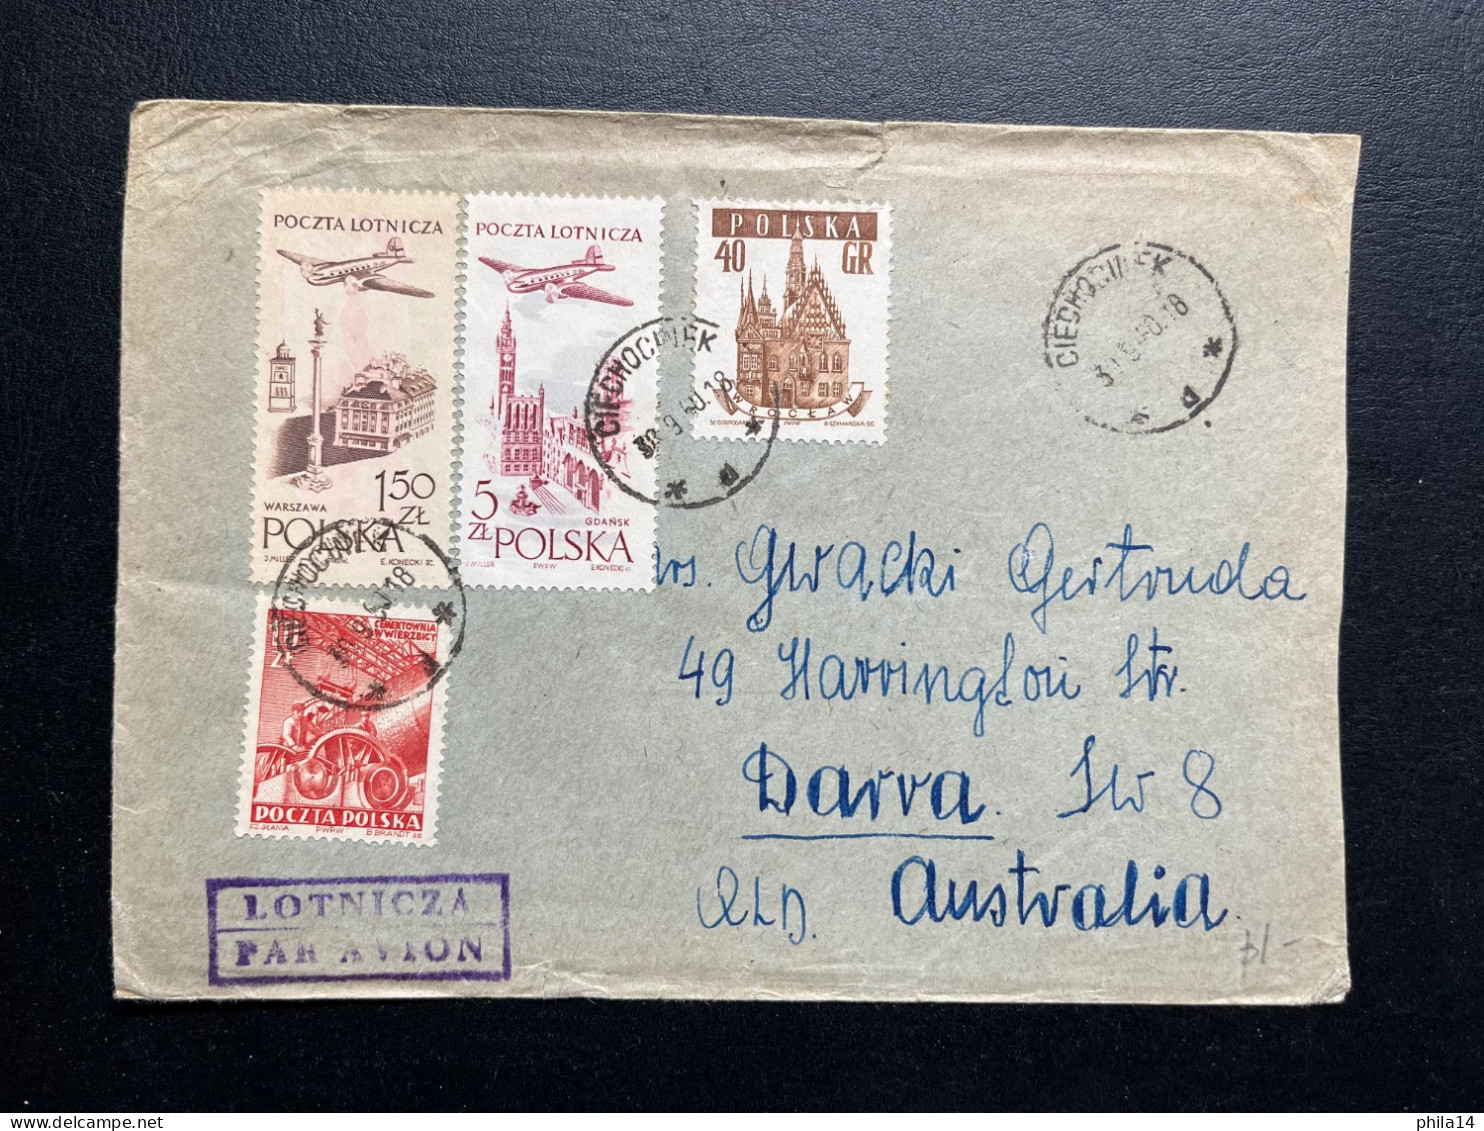 ENVELOPPE POLOGNE CIECHOCWEK 1960 POUR DARVA AUSTRALIE - Covers & Documents